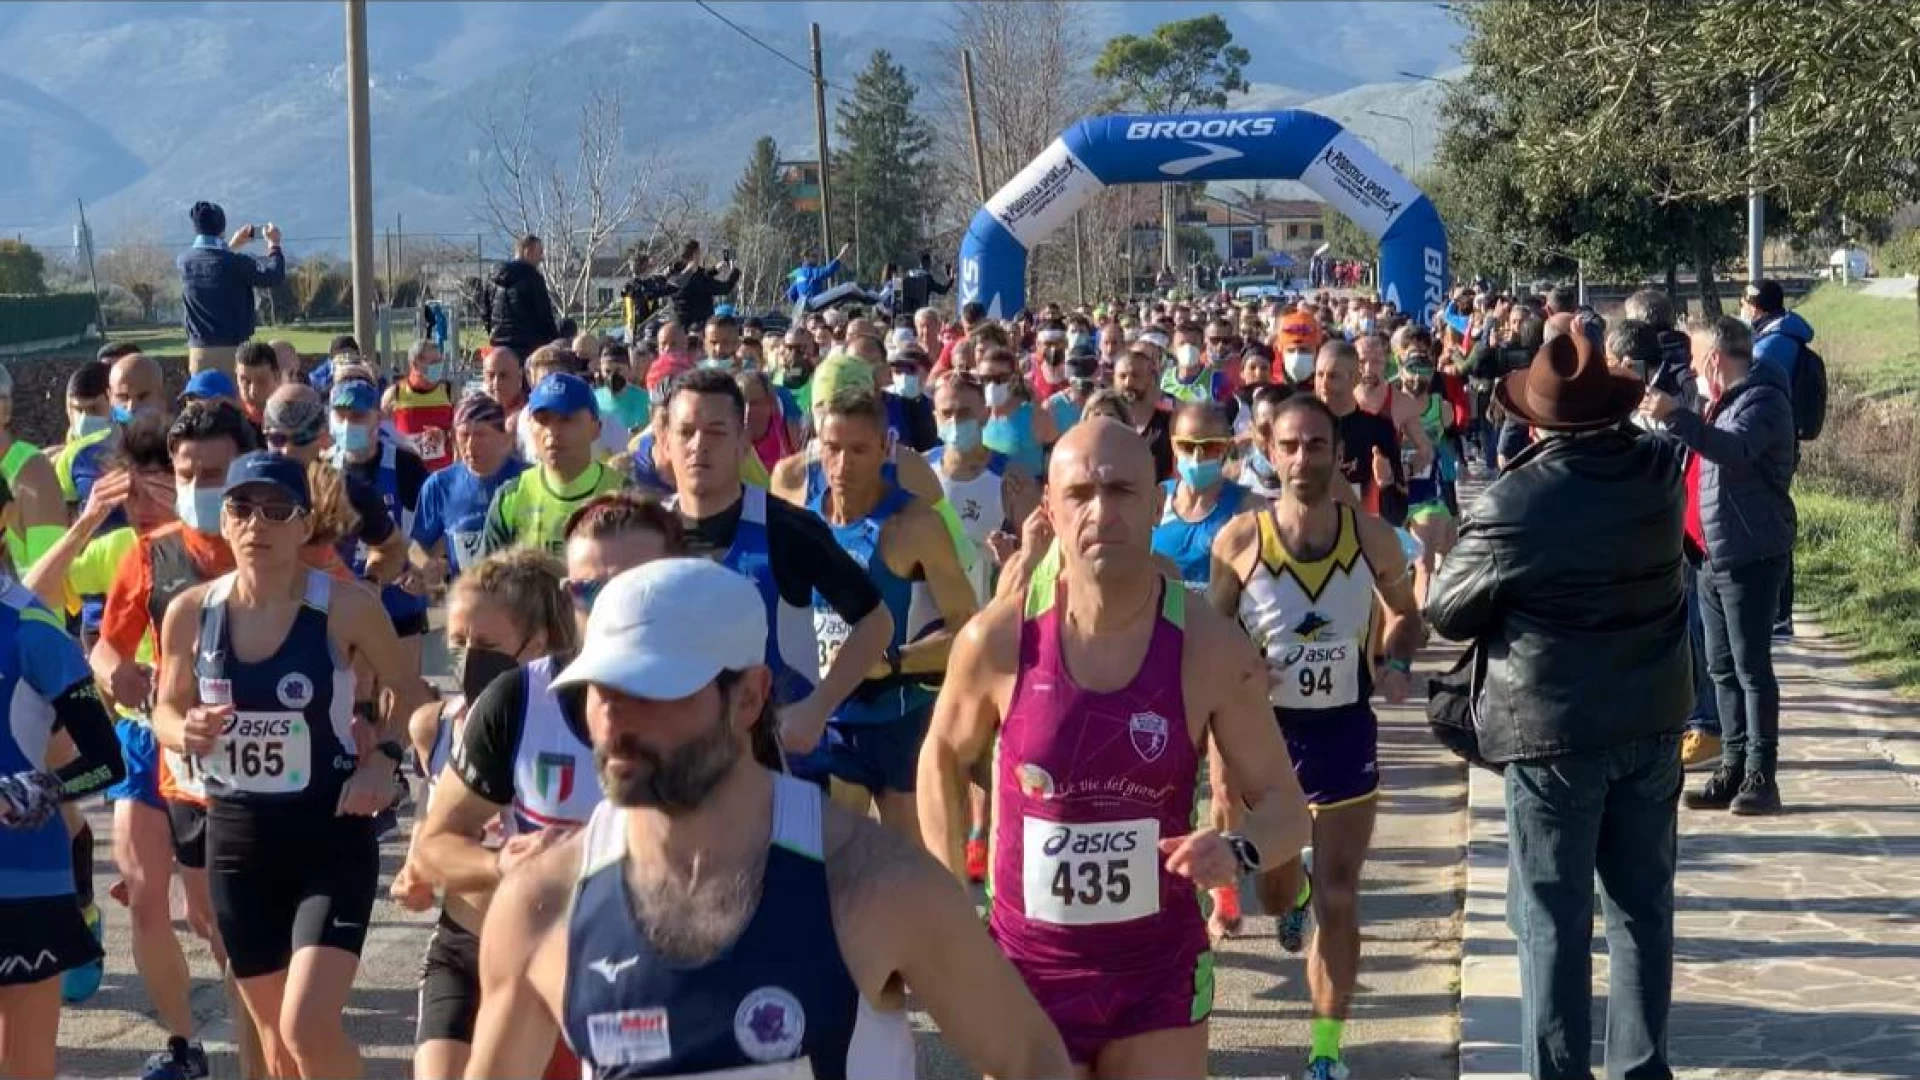 Seconda mezza maratona Provincia di Isernia - Città di Venafro: fissata la data. L’evento si svolgerà domenica 12 marzo.